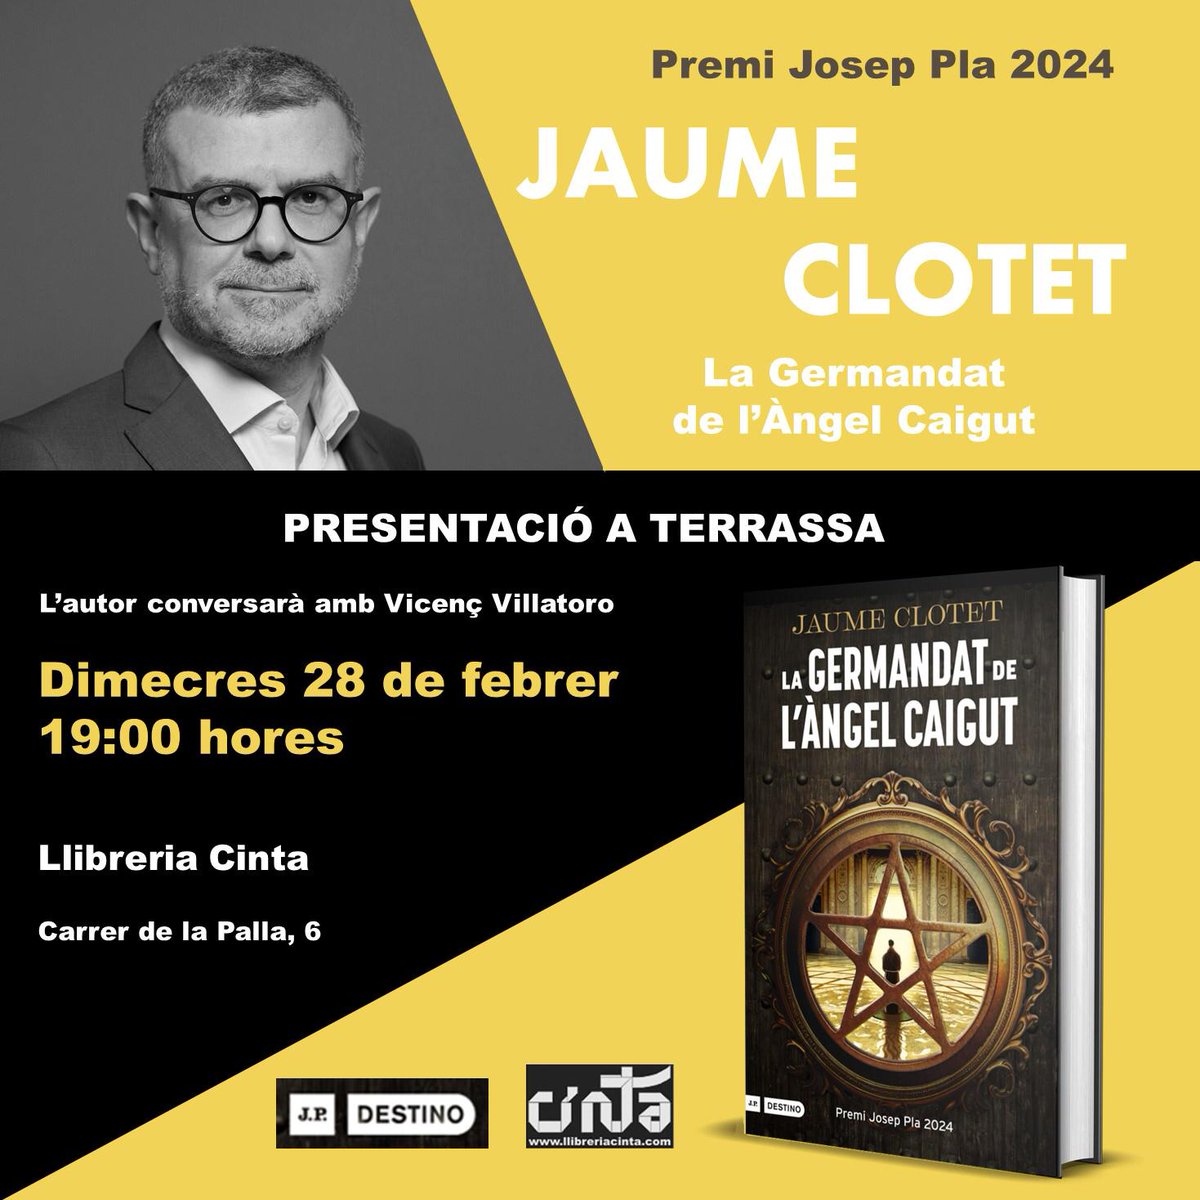 Aquesta tarda l'amic @jaumeclotet presenta el seu llibre 'La Germandat de l'àngel caigut' a la @LlibreriaCinta de #Terrassa. No us ho perdeu perquè amb aquesta novel·la ha guanyat el prestigiós premi Josep Pla i s'ha situat entre els llibres en català més venuts!